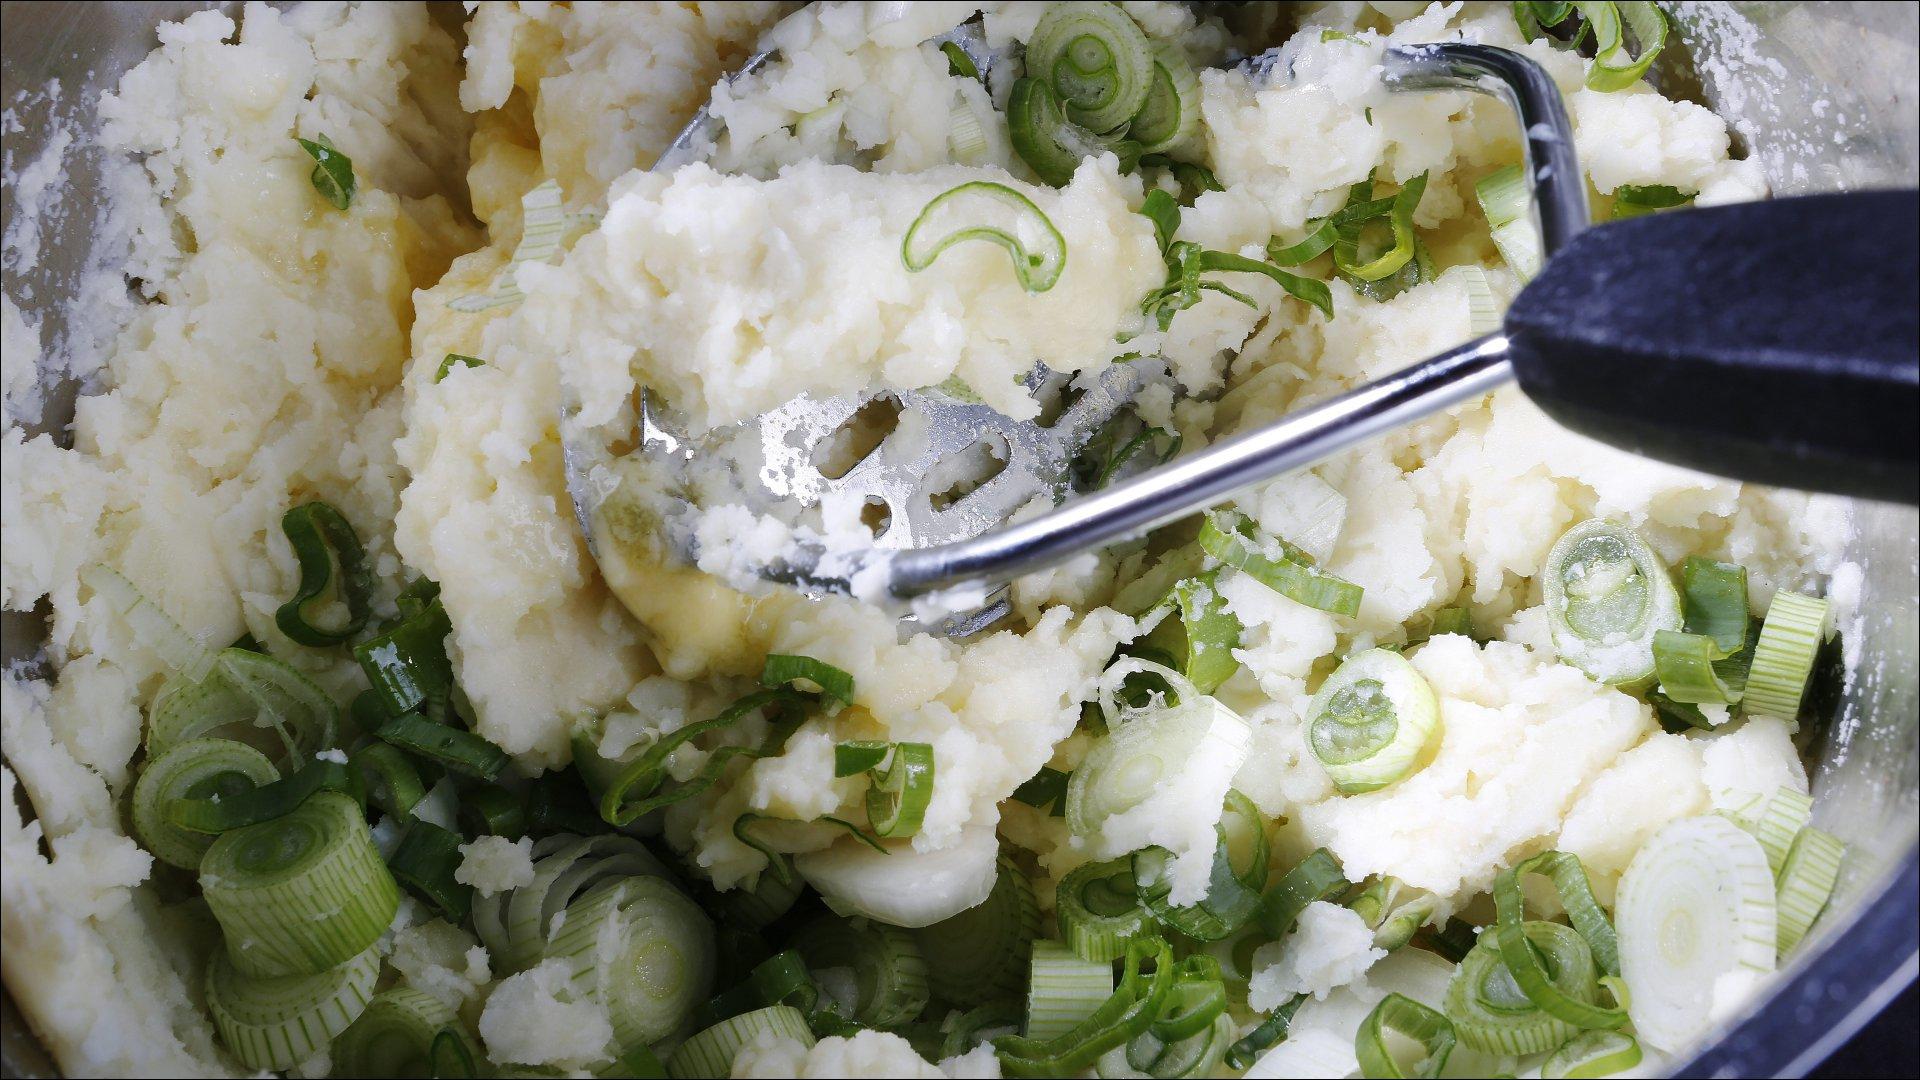 Skrell potetene og kok dem møre i lettsaltet vann. Tilsett smørterninger, mos potetene lett sammen.
Finhakk vårløken og bland den sammen med den varme mosen. Juster tykkelsen på mosen med melk eller matfløte.
Smak til med salt og pepper.